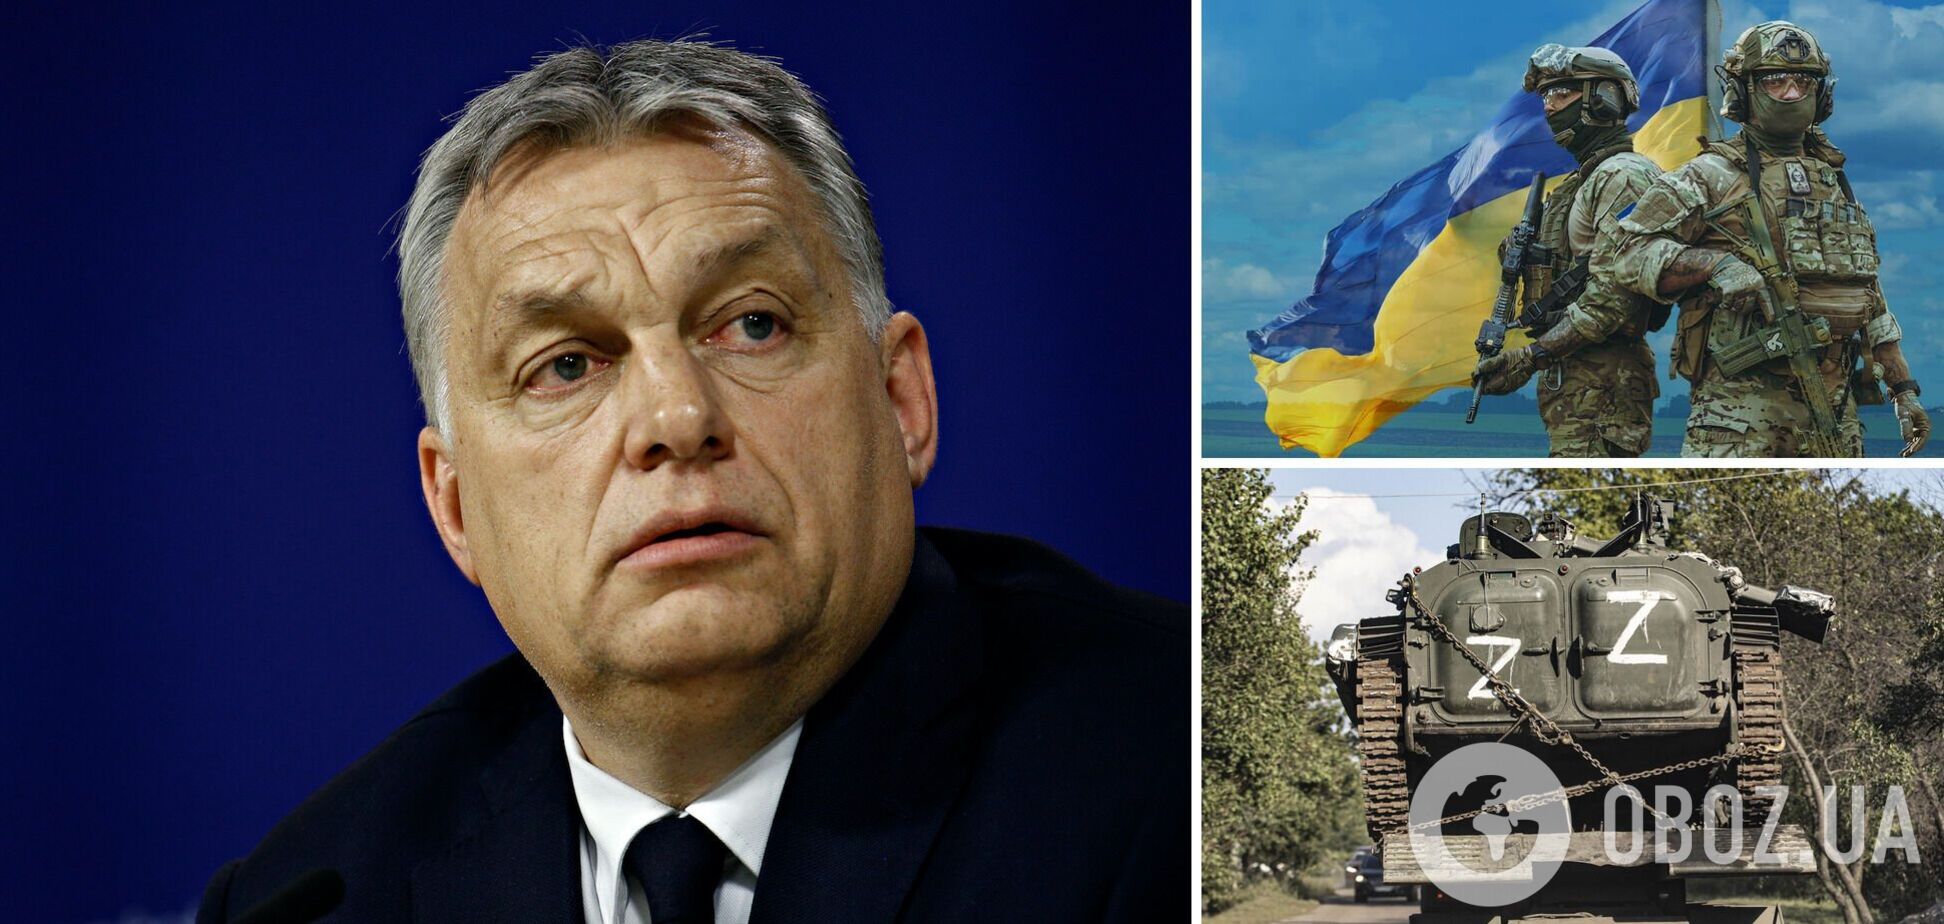 Венгрия блокирует совместное заявление стран ЕС ко второй годовщине войны в Украине, – журналист